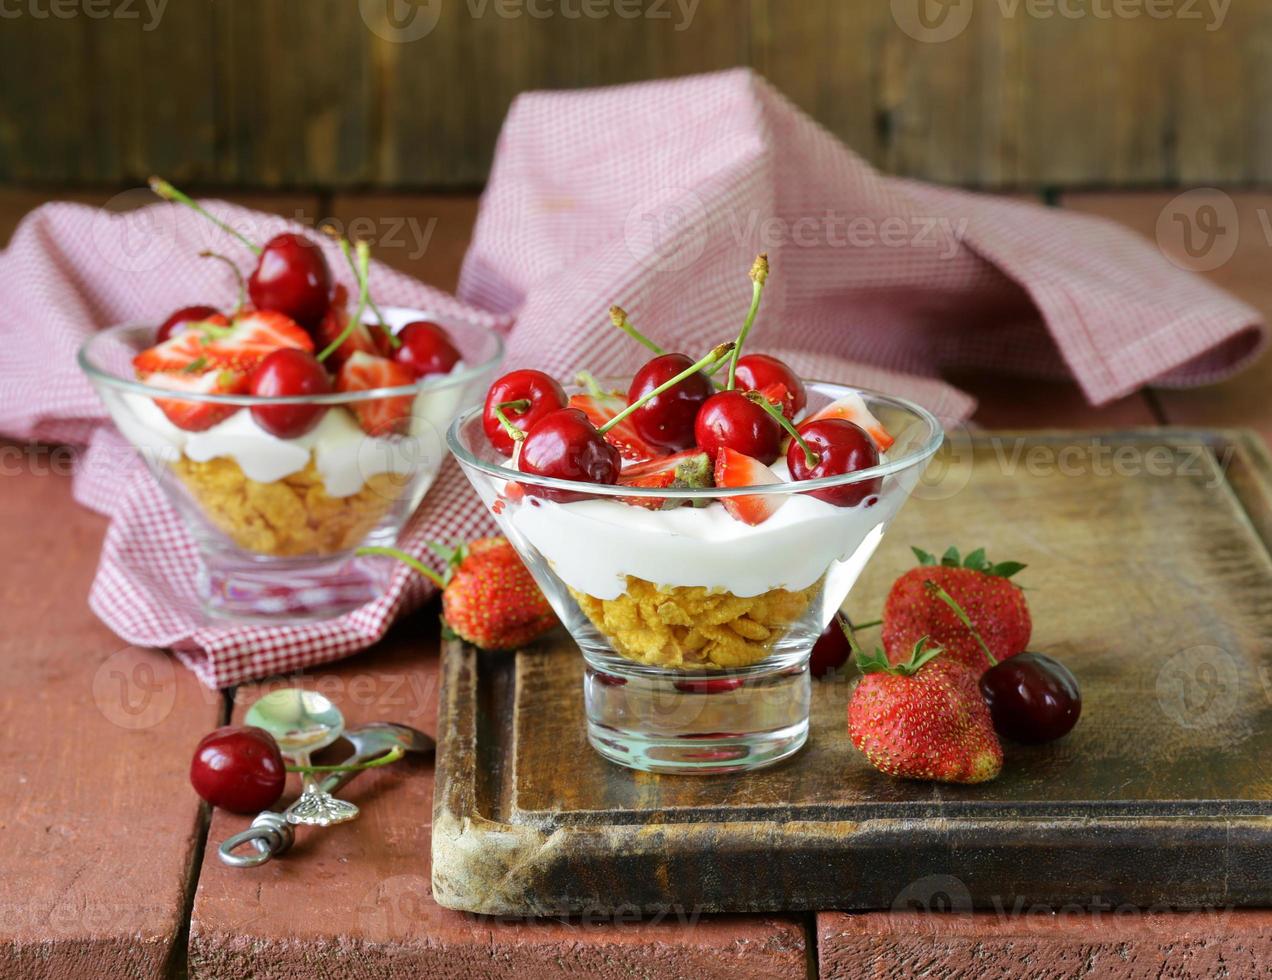 sobremesa de iogurte com cerejas e morangos foto